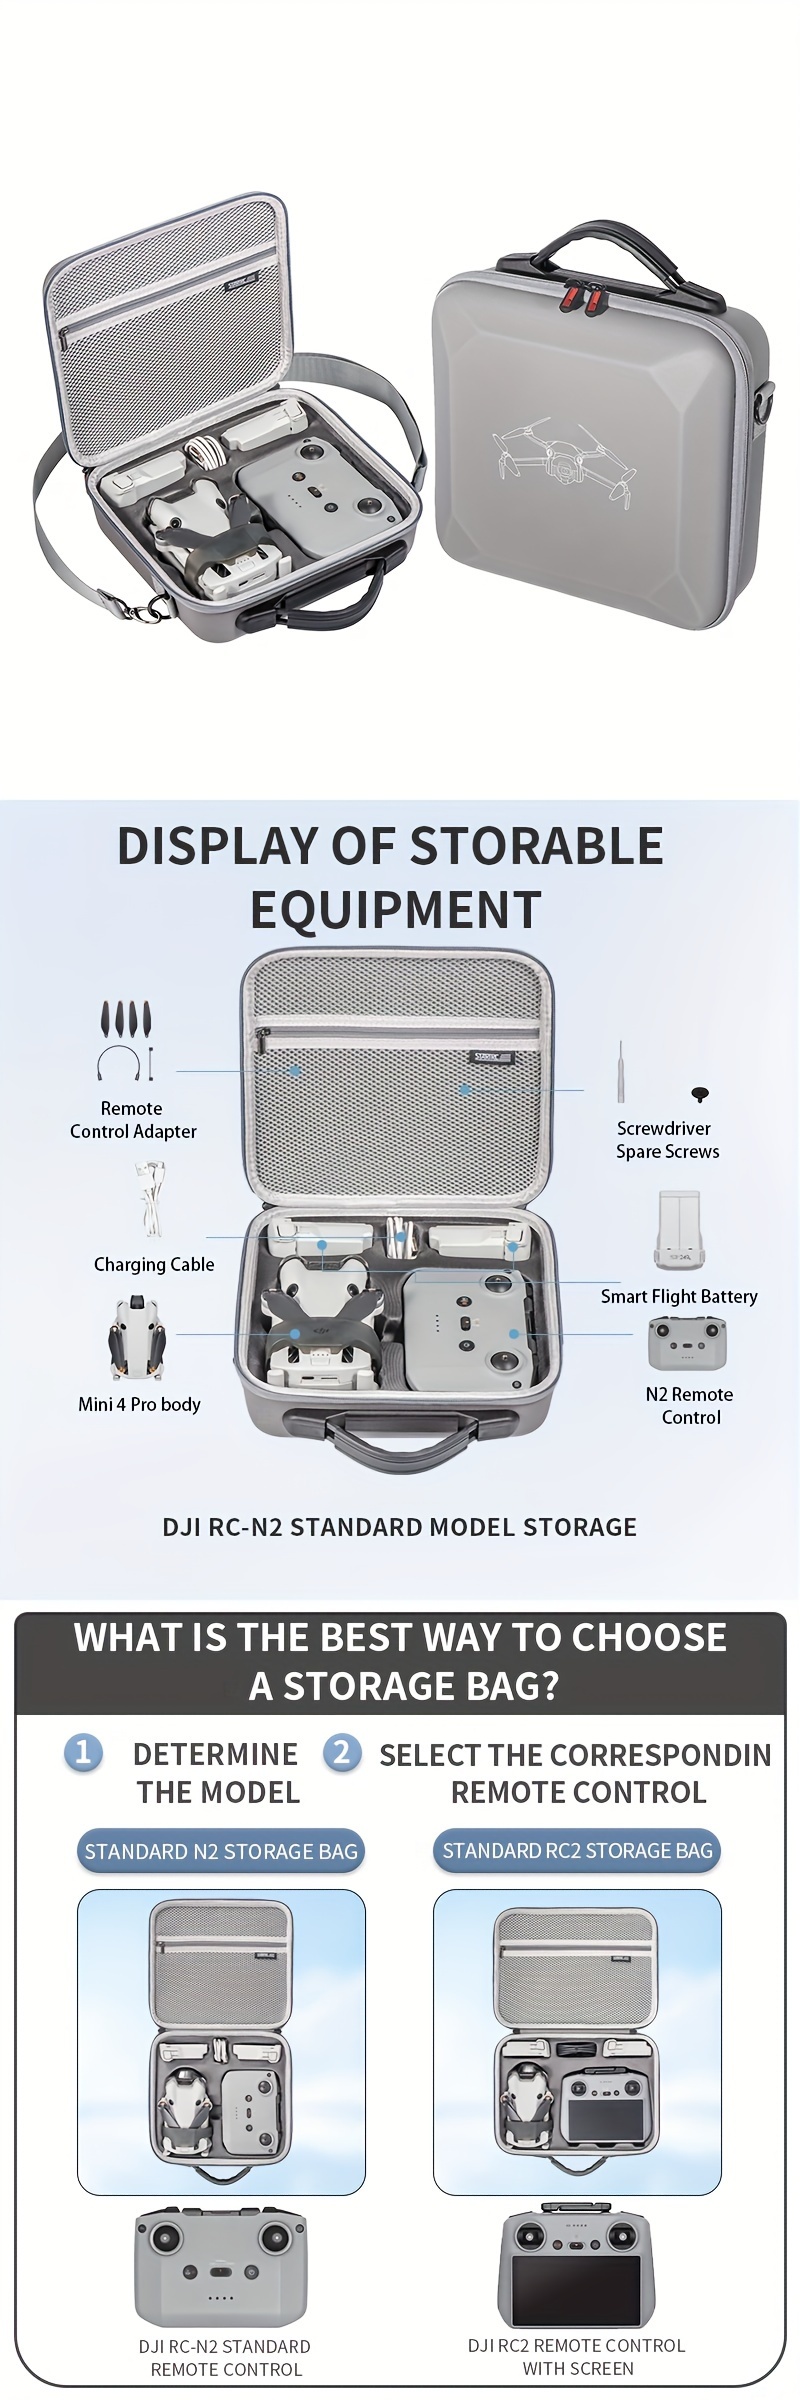 For Mini 4 Pro Storage Bag Remote Control Portable Shoulder - Temu